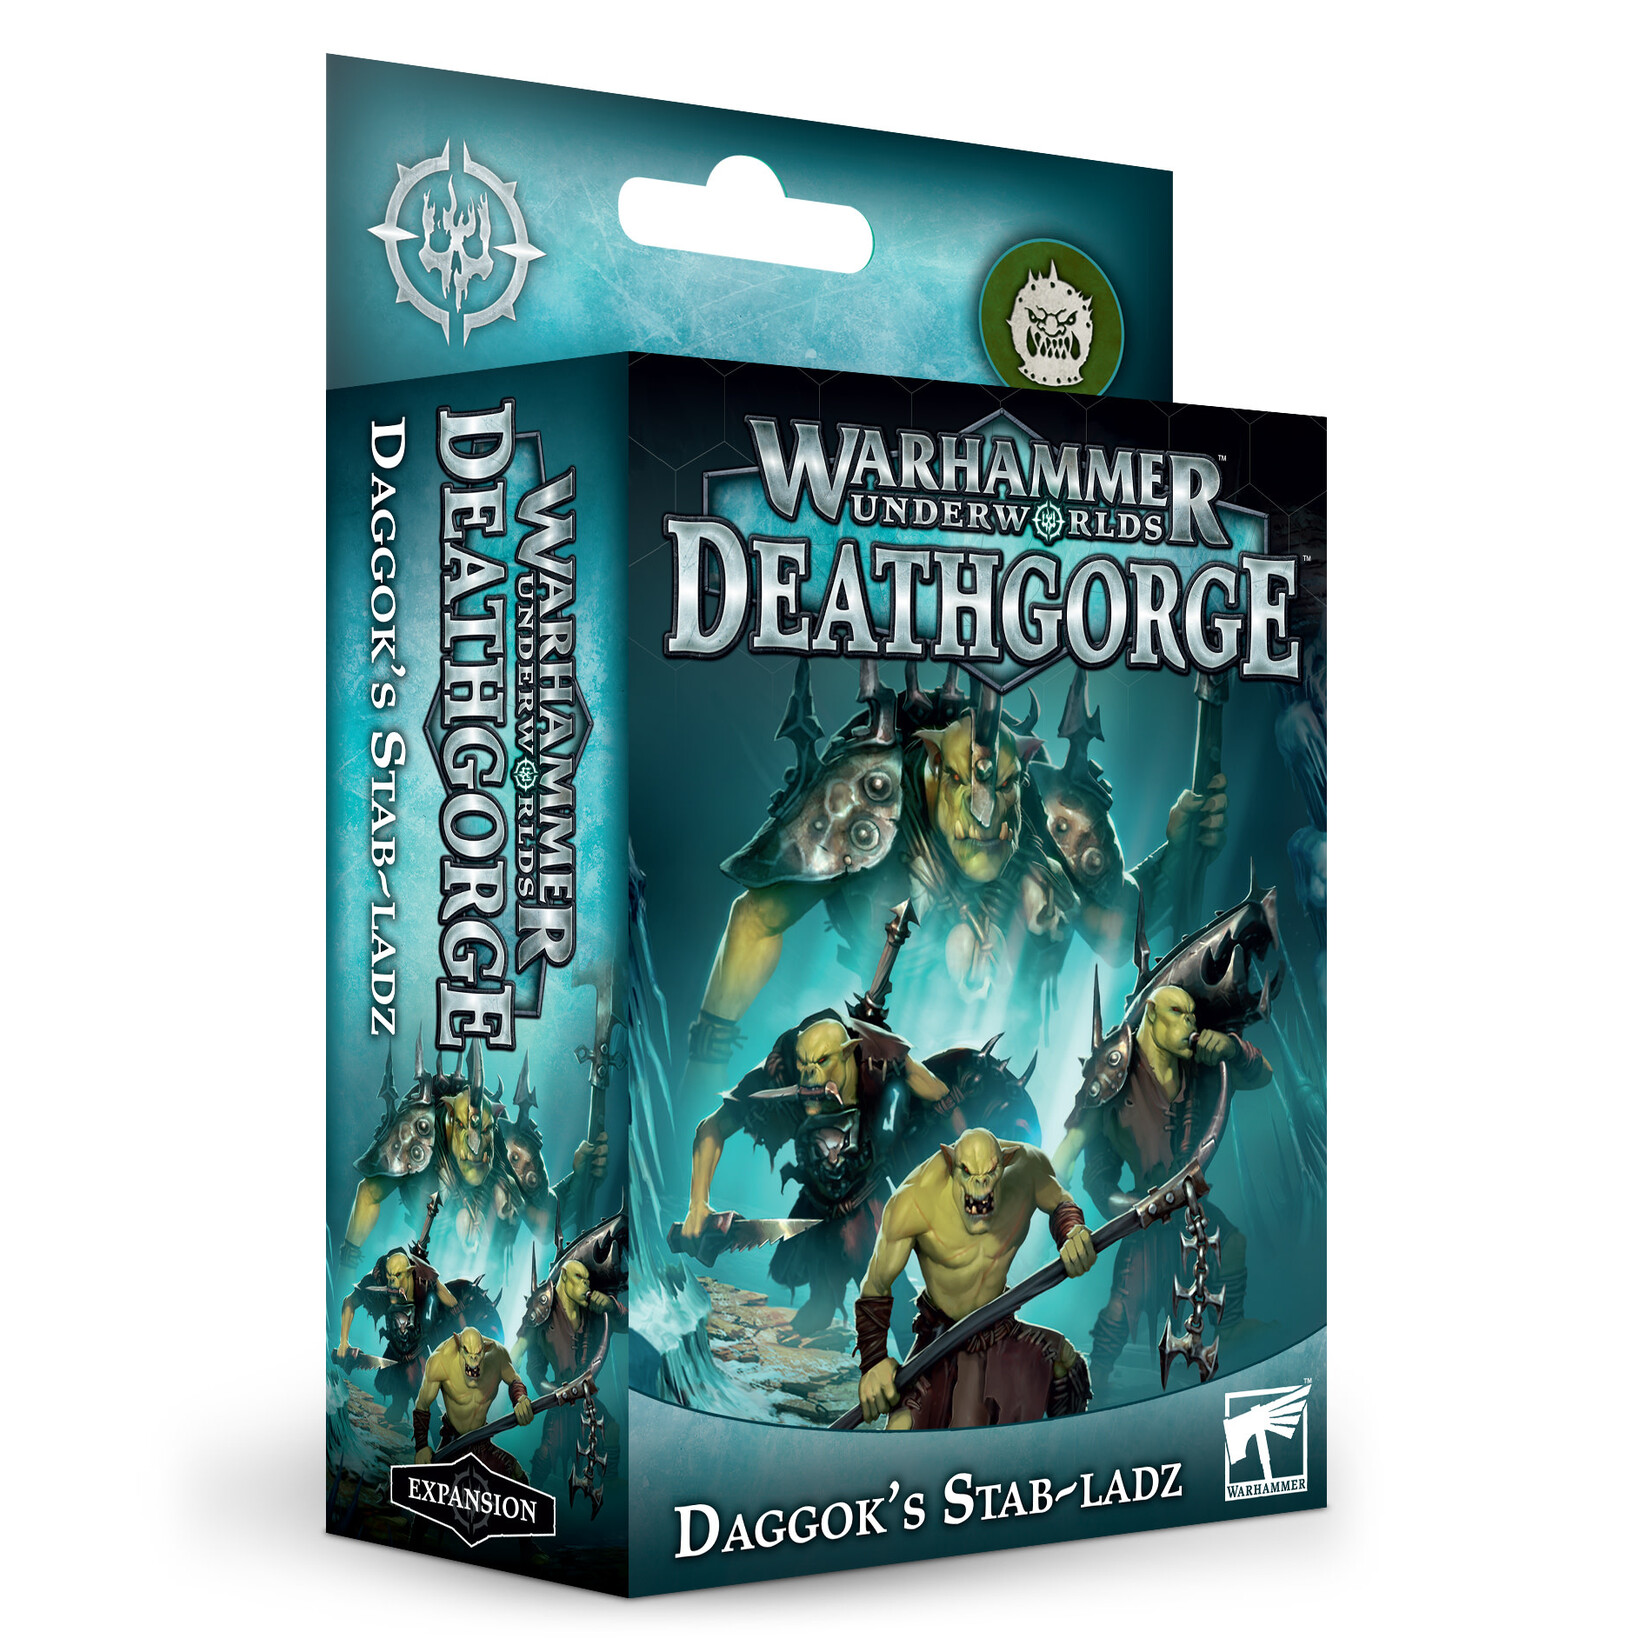 Games Workshop Warhammer Underworlds Deathgorge - Daggok’s Stab-Ladz